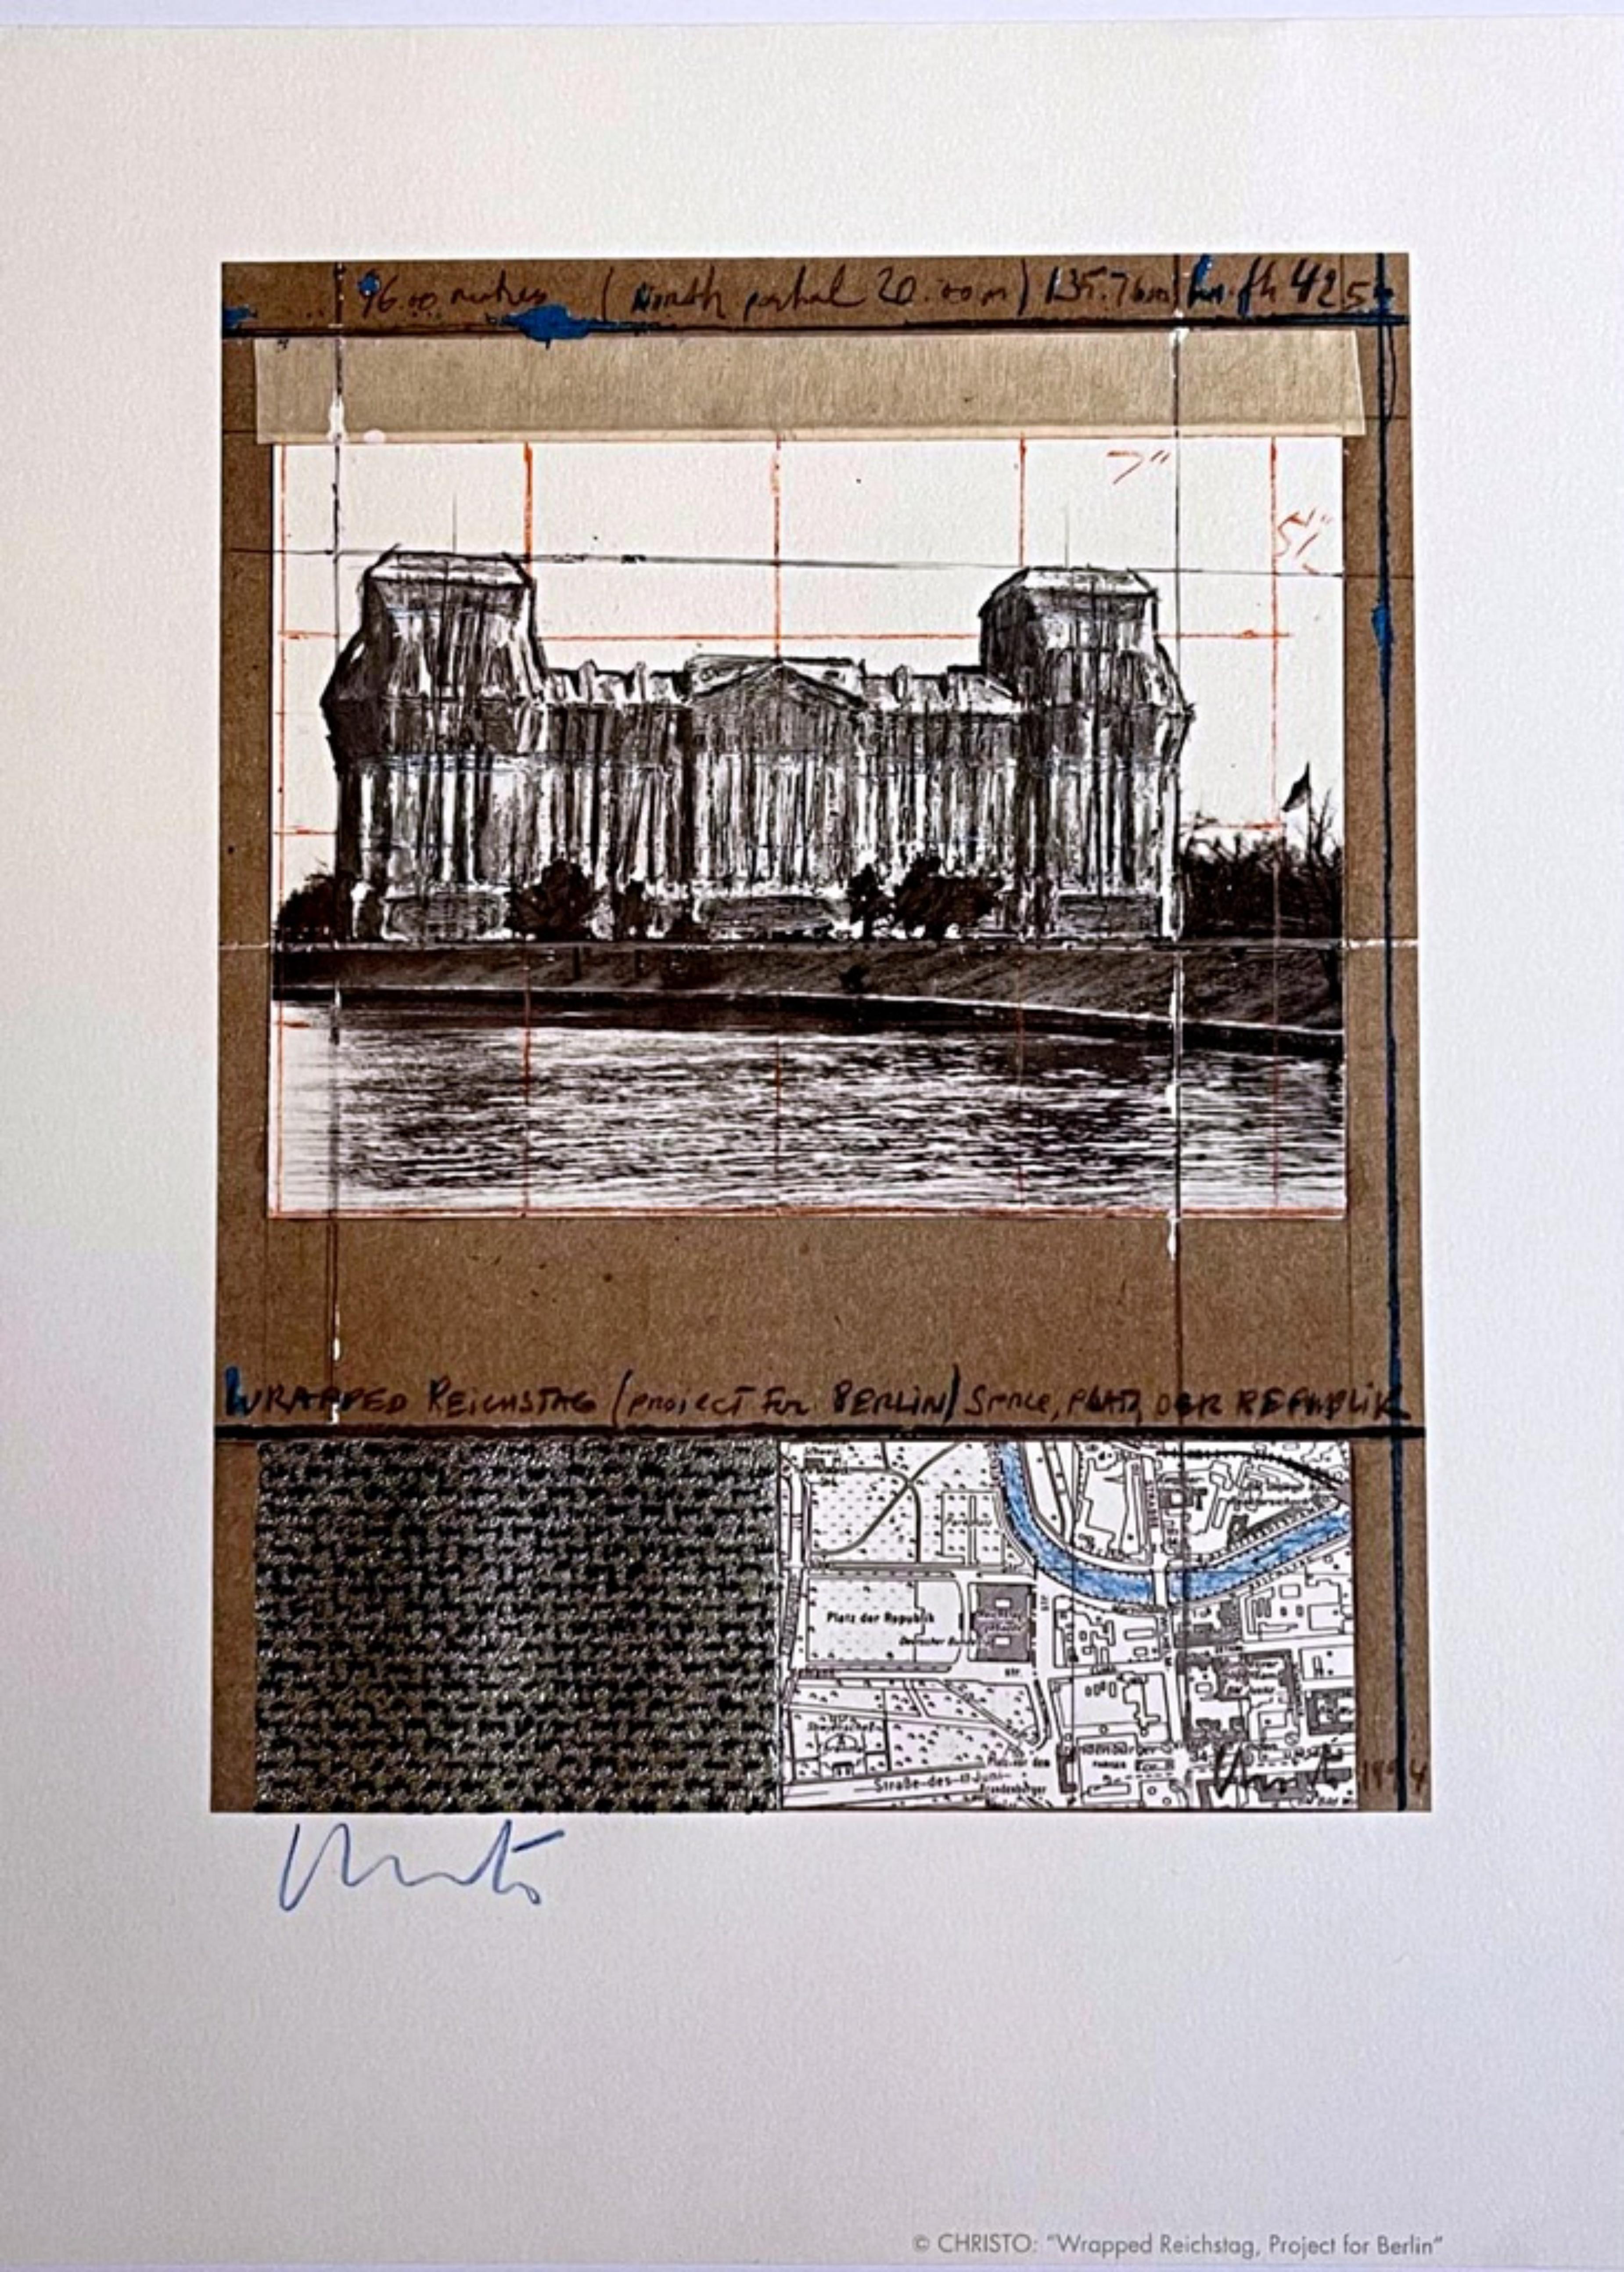 Eingewickelter Reichstag, Berlin, Collage mit erhabenem Thermosilberpapier, handsigniert – Mixed Media Art von Christo